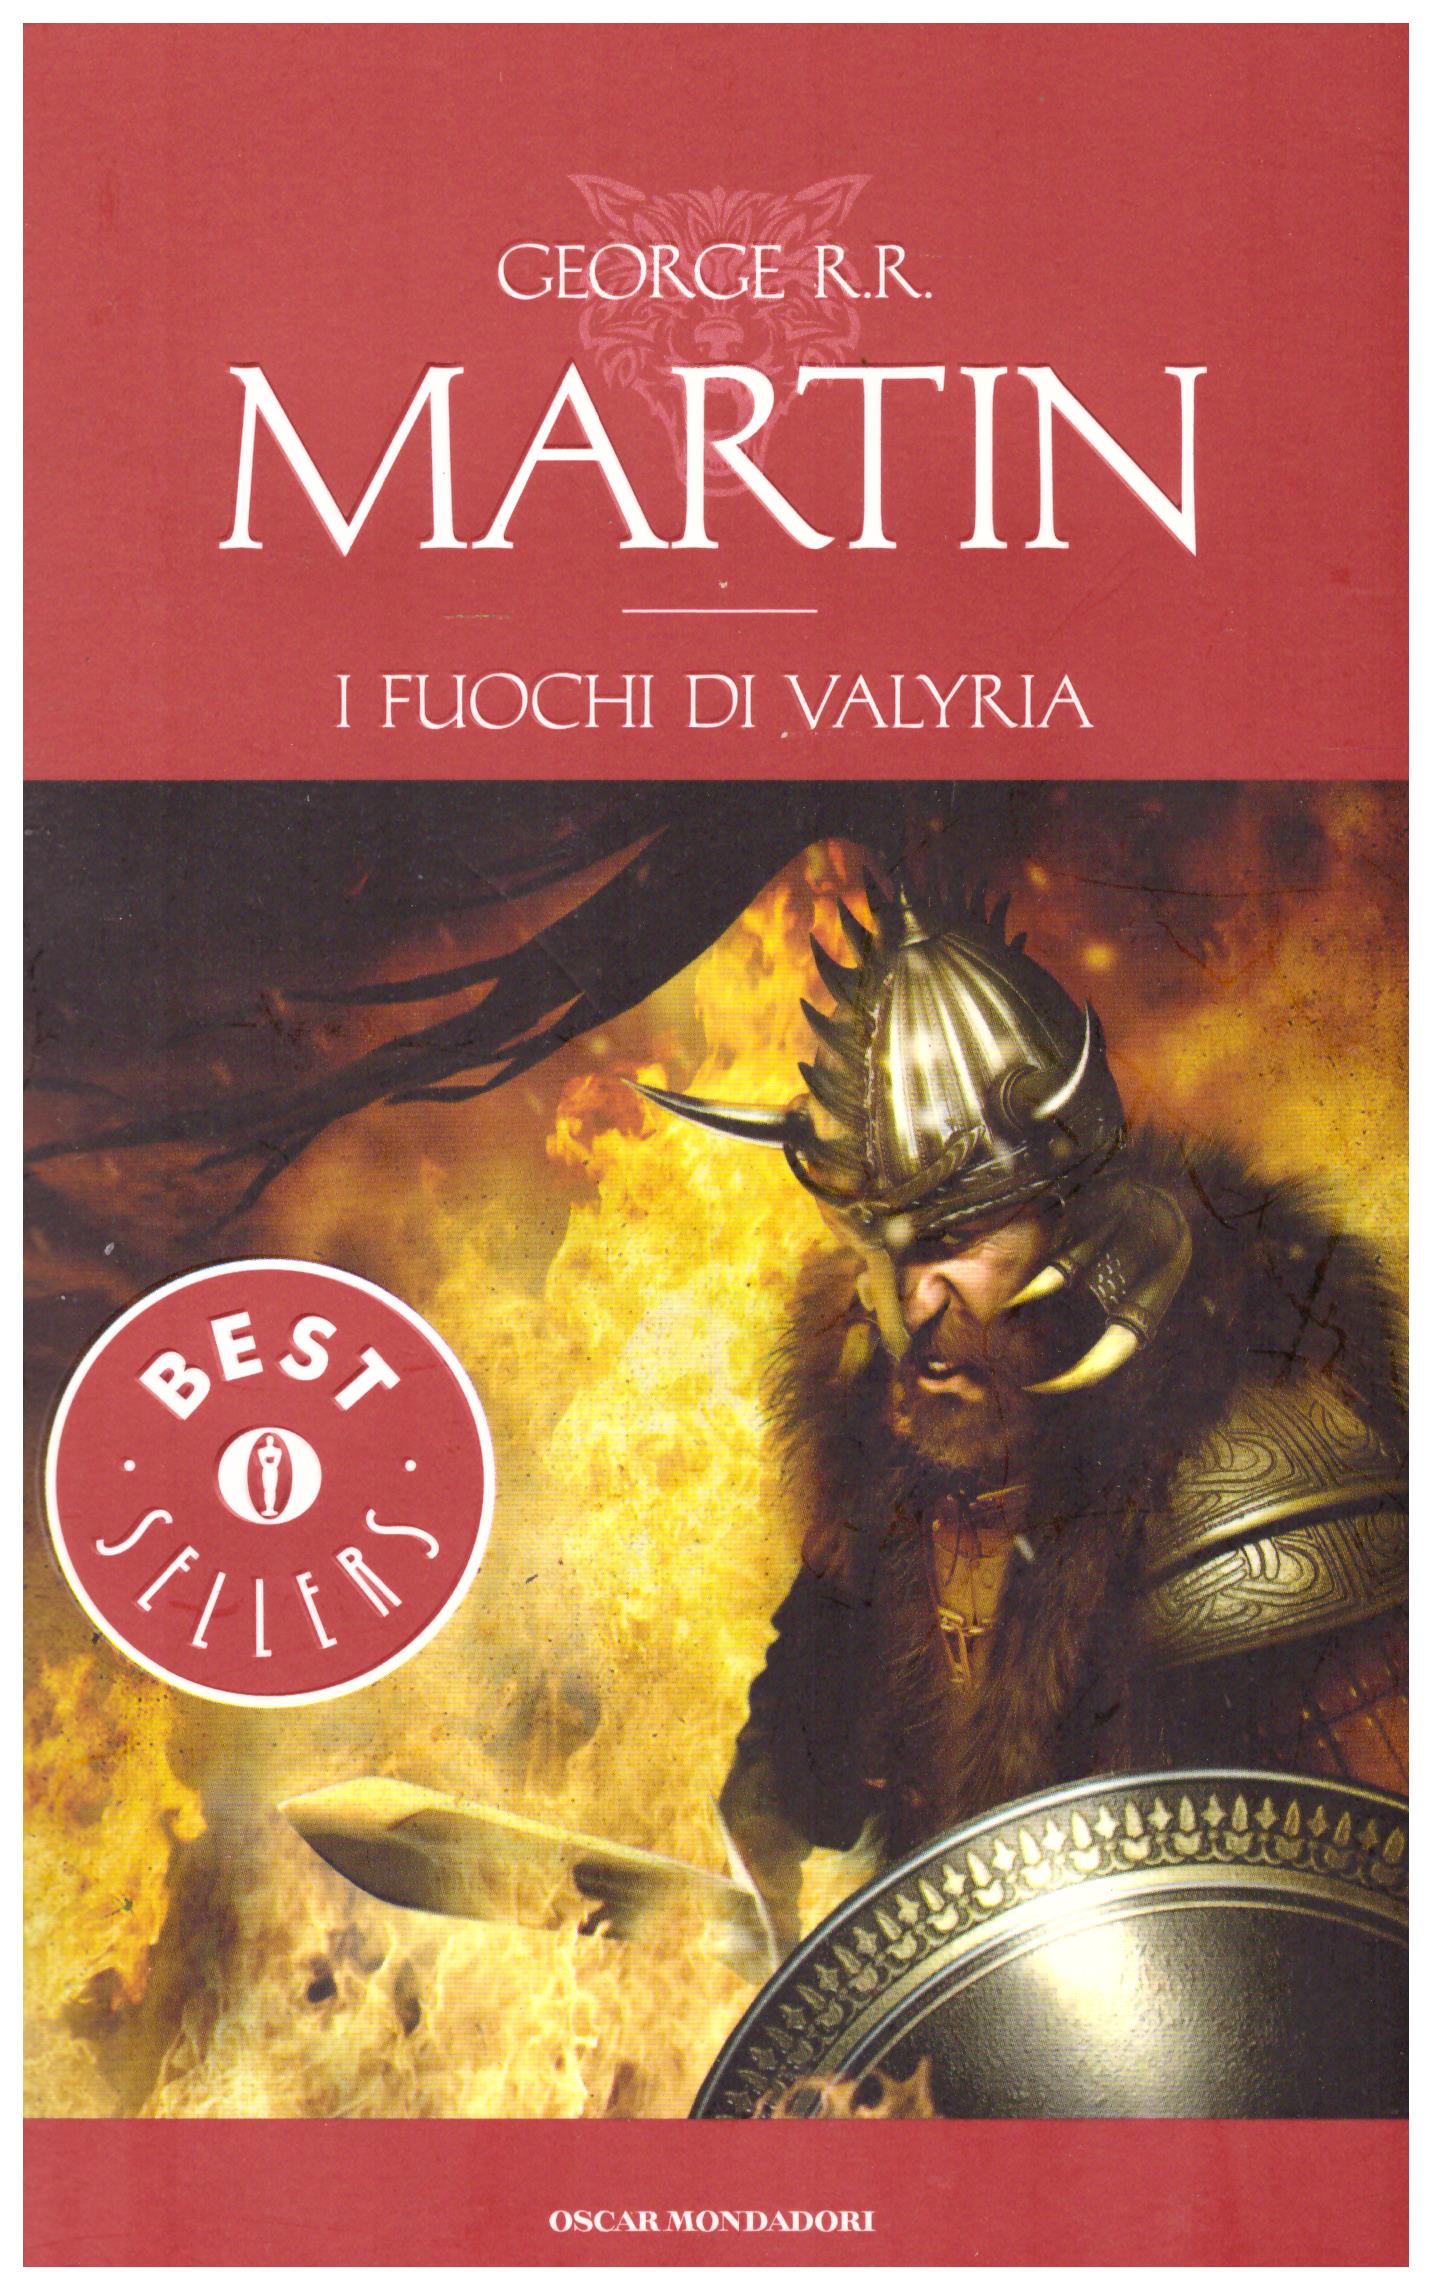 Titolo: I fuochi di Valyria Autore: George R.R. Martin  Editore: mondadori, 2013